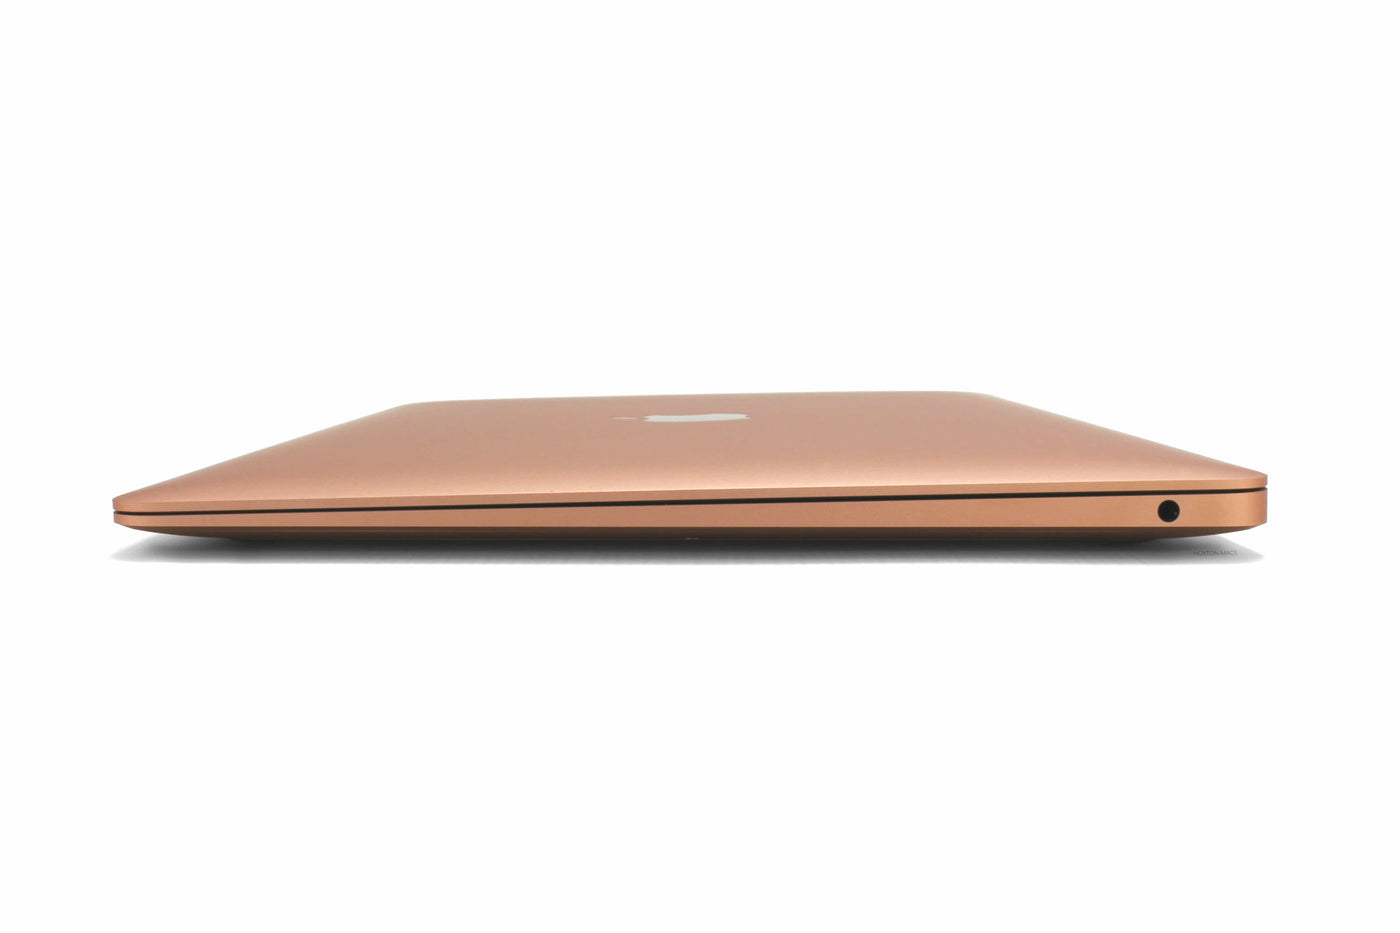 Apple MacBook Air 13-inch MacBook Air 13-inch Core i5 1.1GHz (Gold, 2020) - Fair